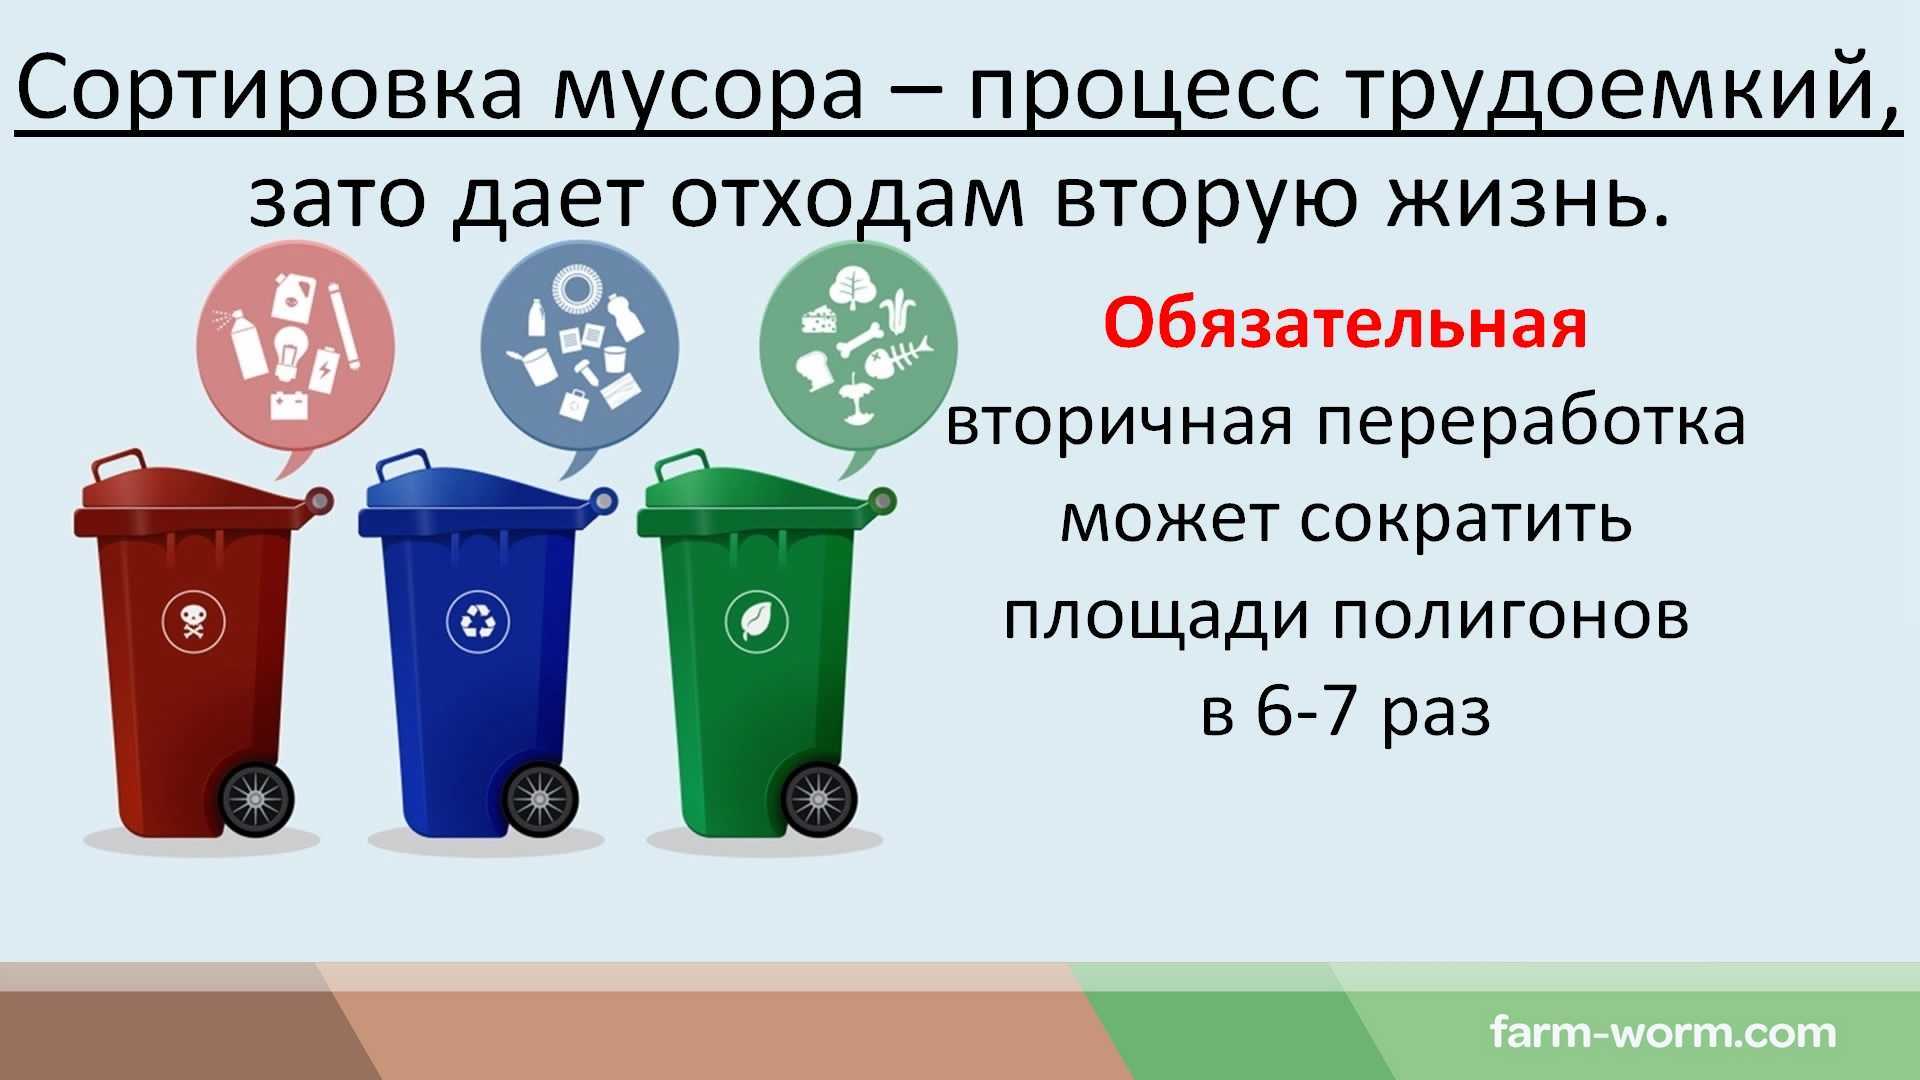 Классификация бытовых отходов по классам